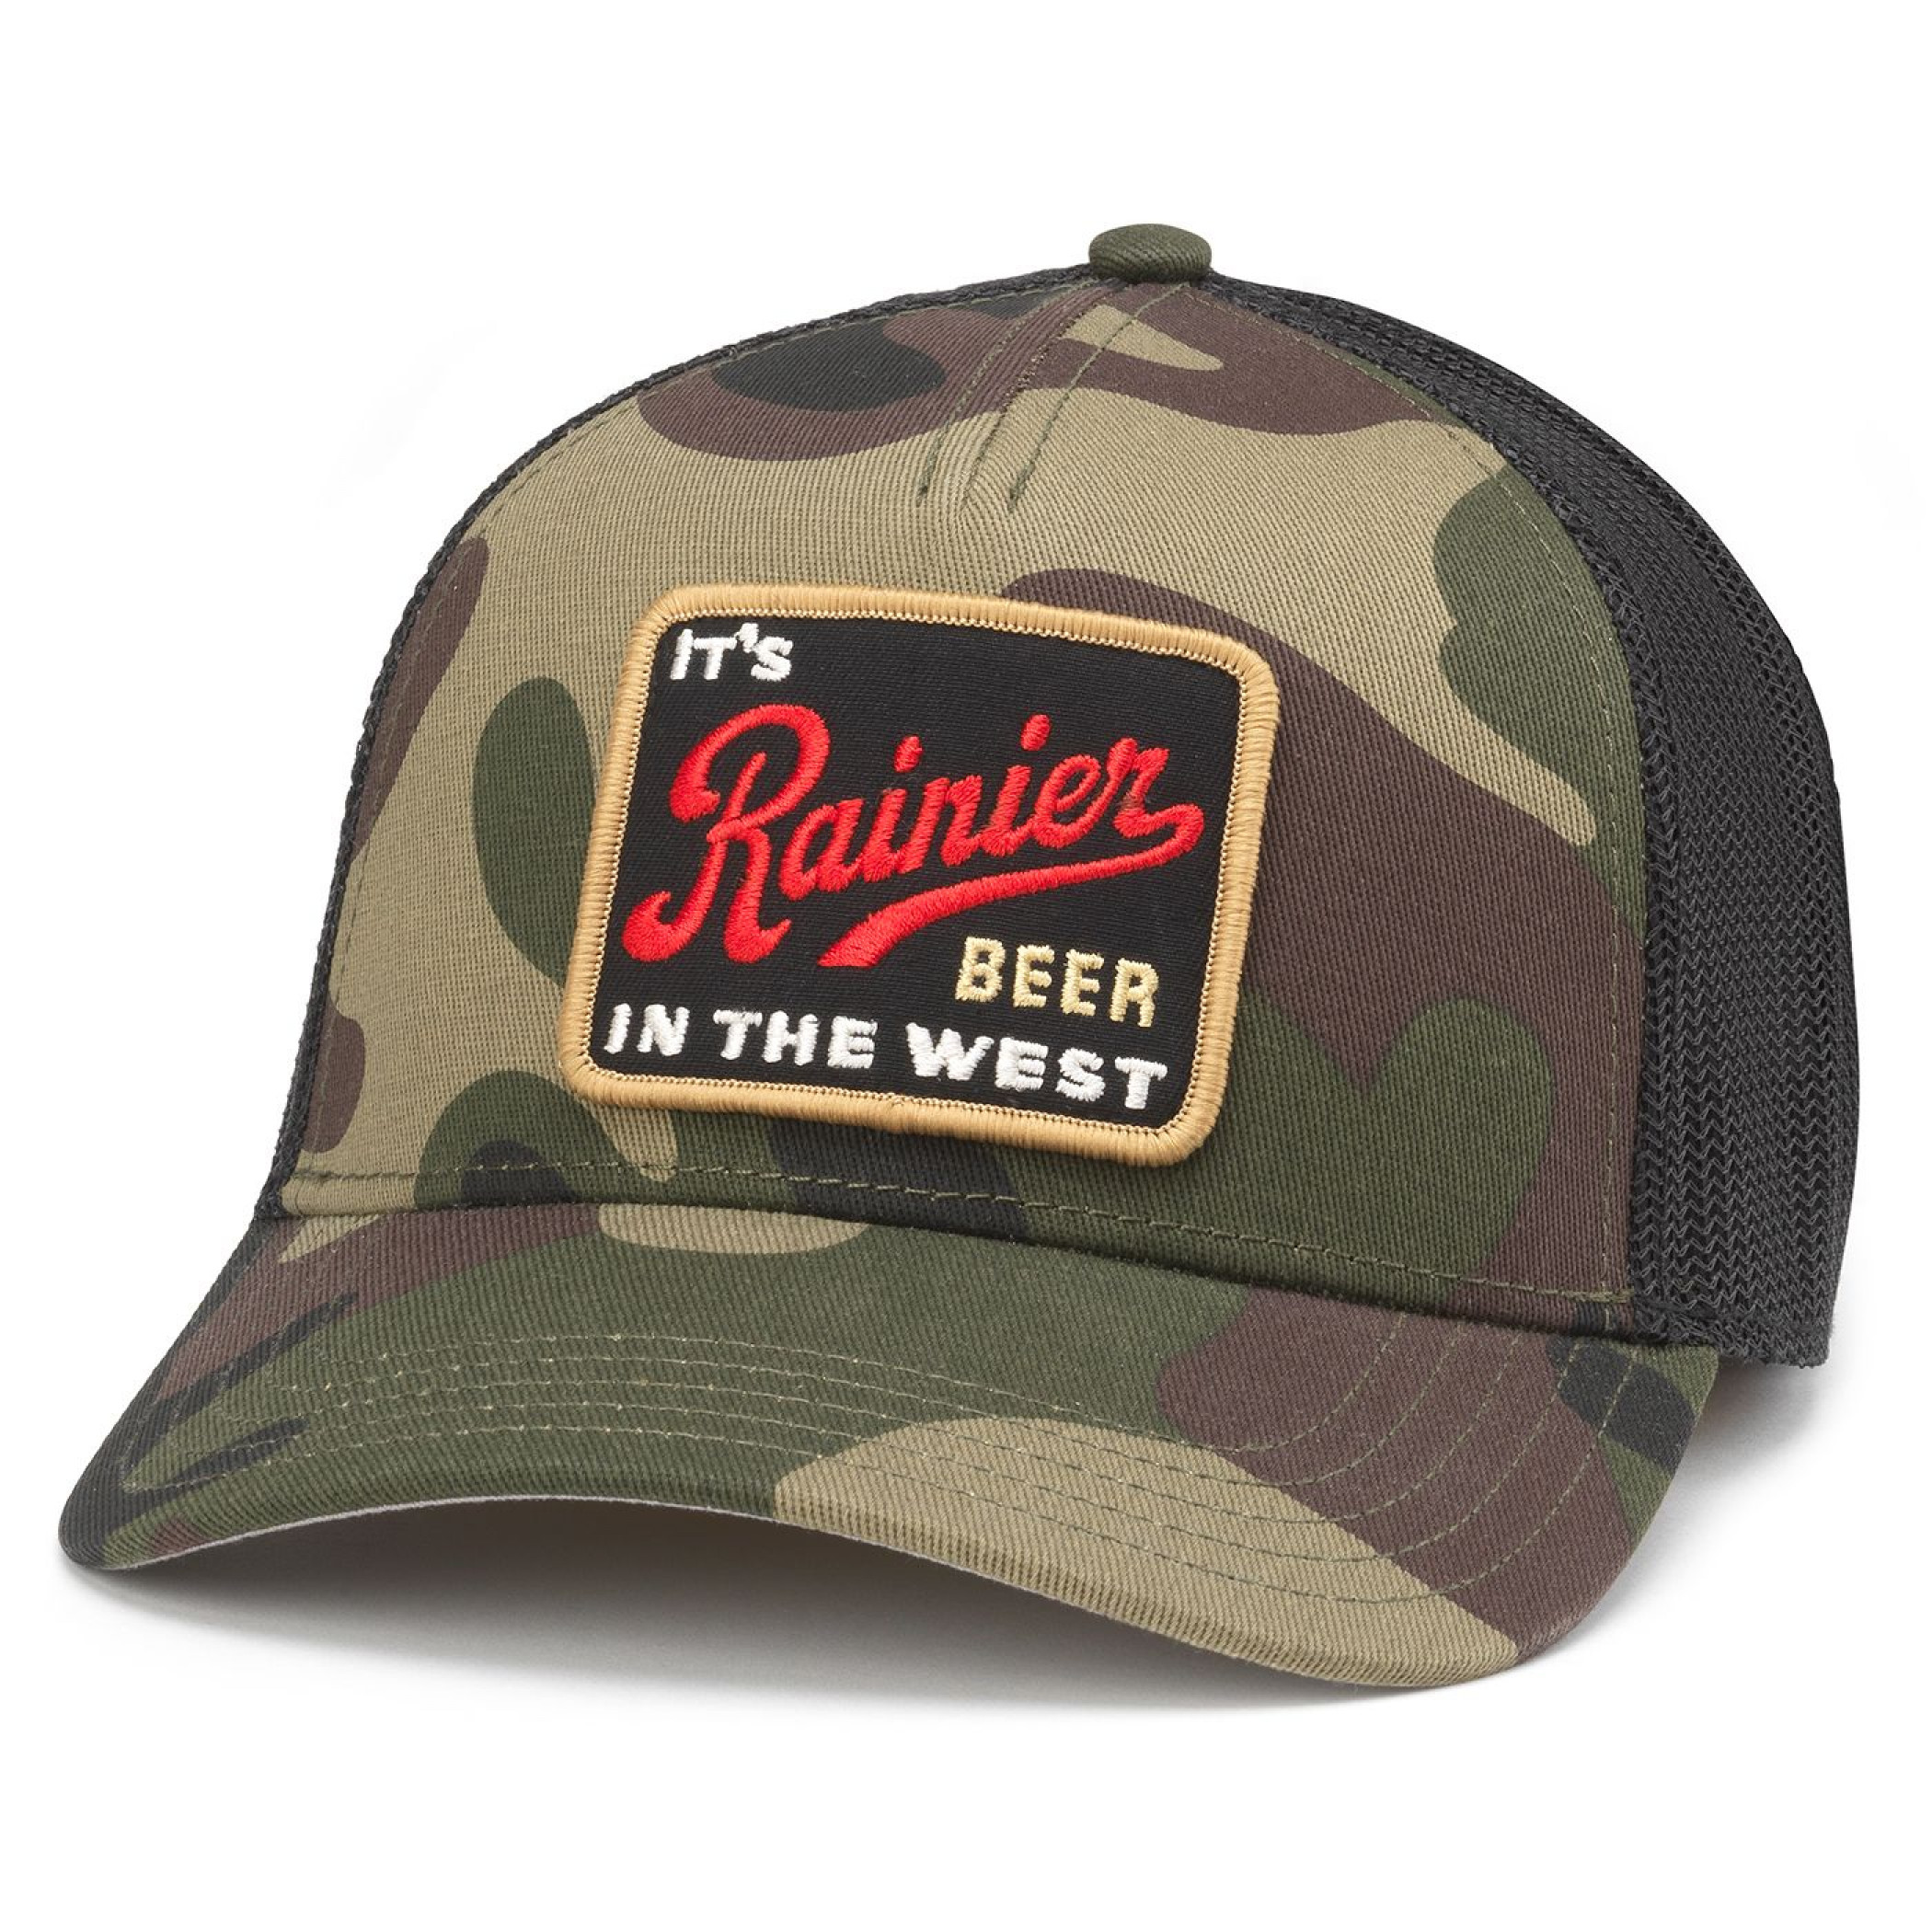 Rainier Beer It's In The West Camo Adjustable Hat